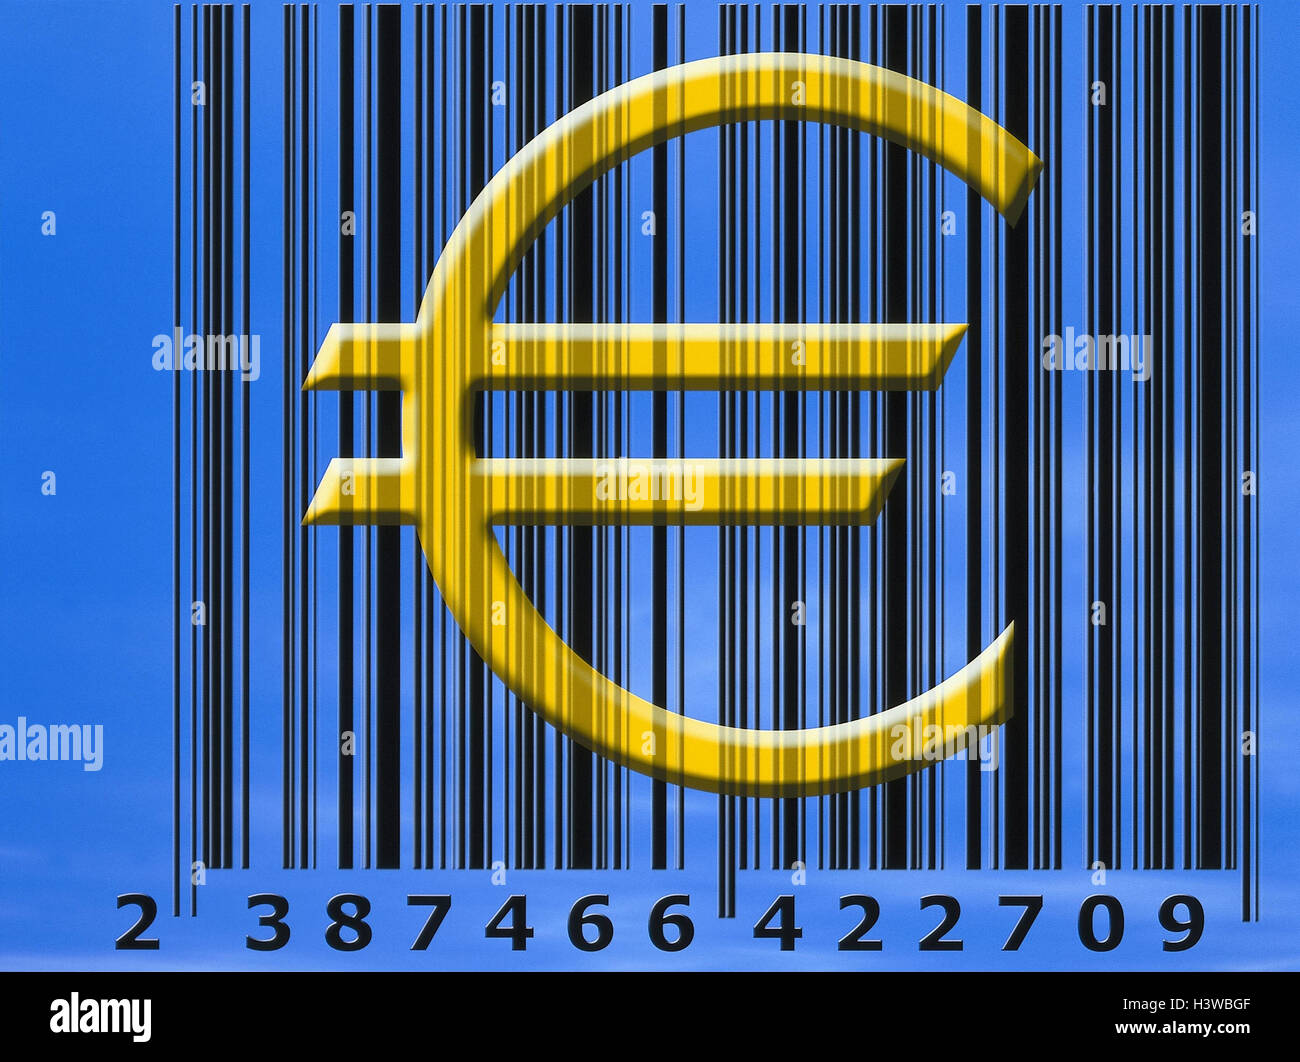 Bar-Code, Währung Figur, Euro, Composing, Wirtschaft, Finanzen, Währung, Einheitswährung, Europa, EWWU, WWU, der EU, der Europäischen Union, Währungssystem, Einheit, Umstellung, Barcode Stockfoto